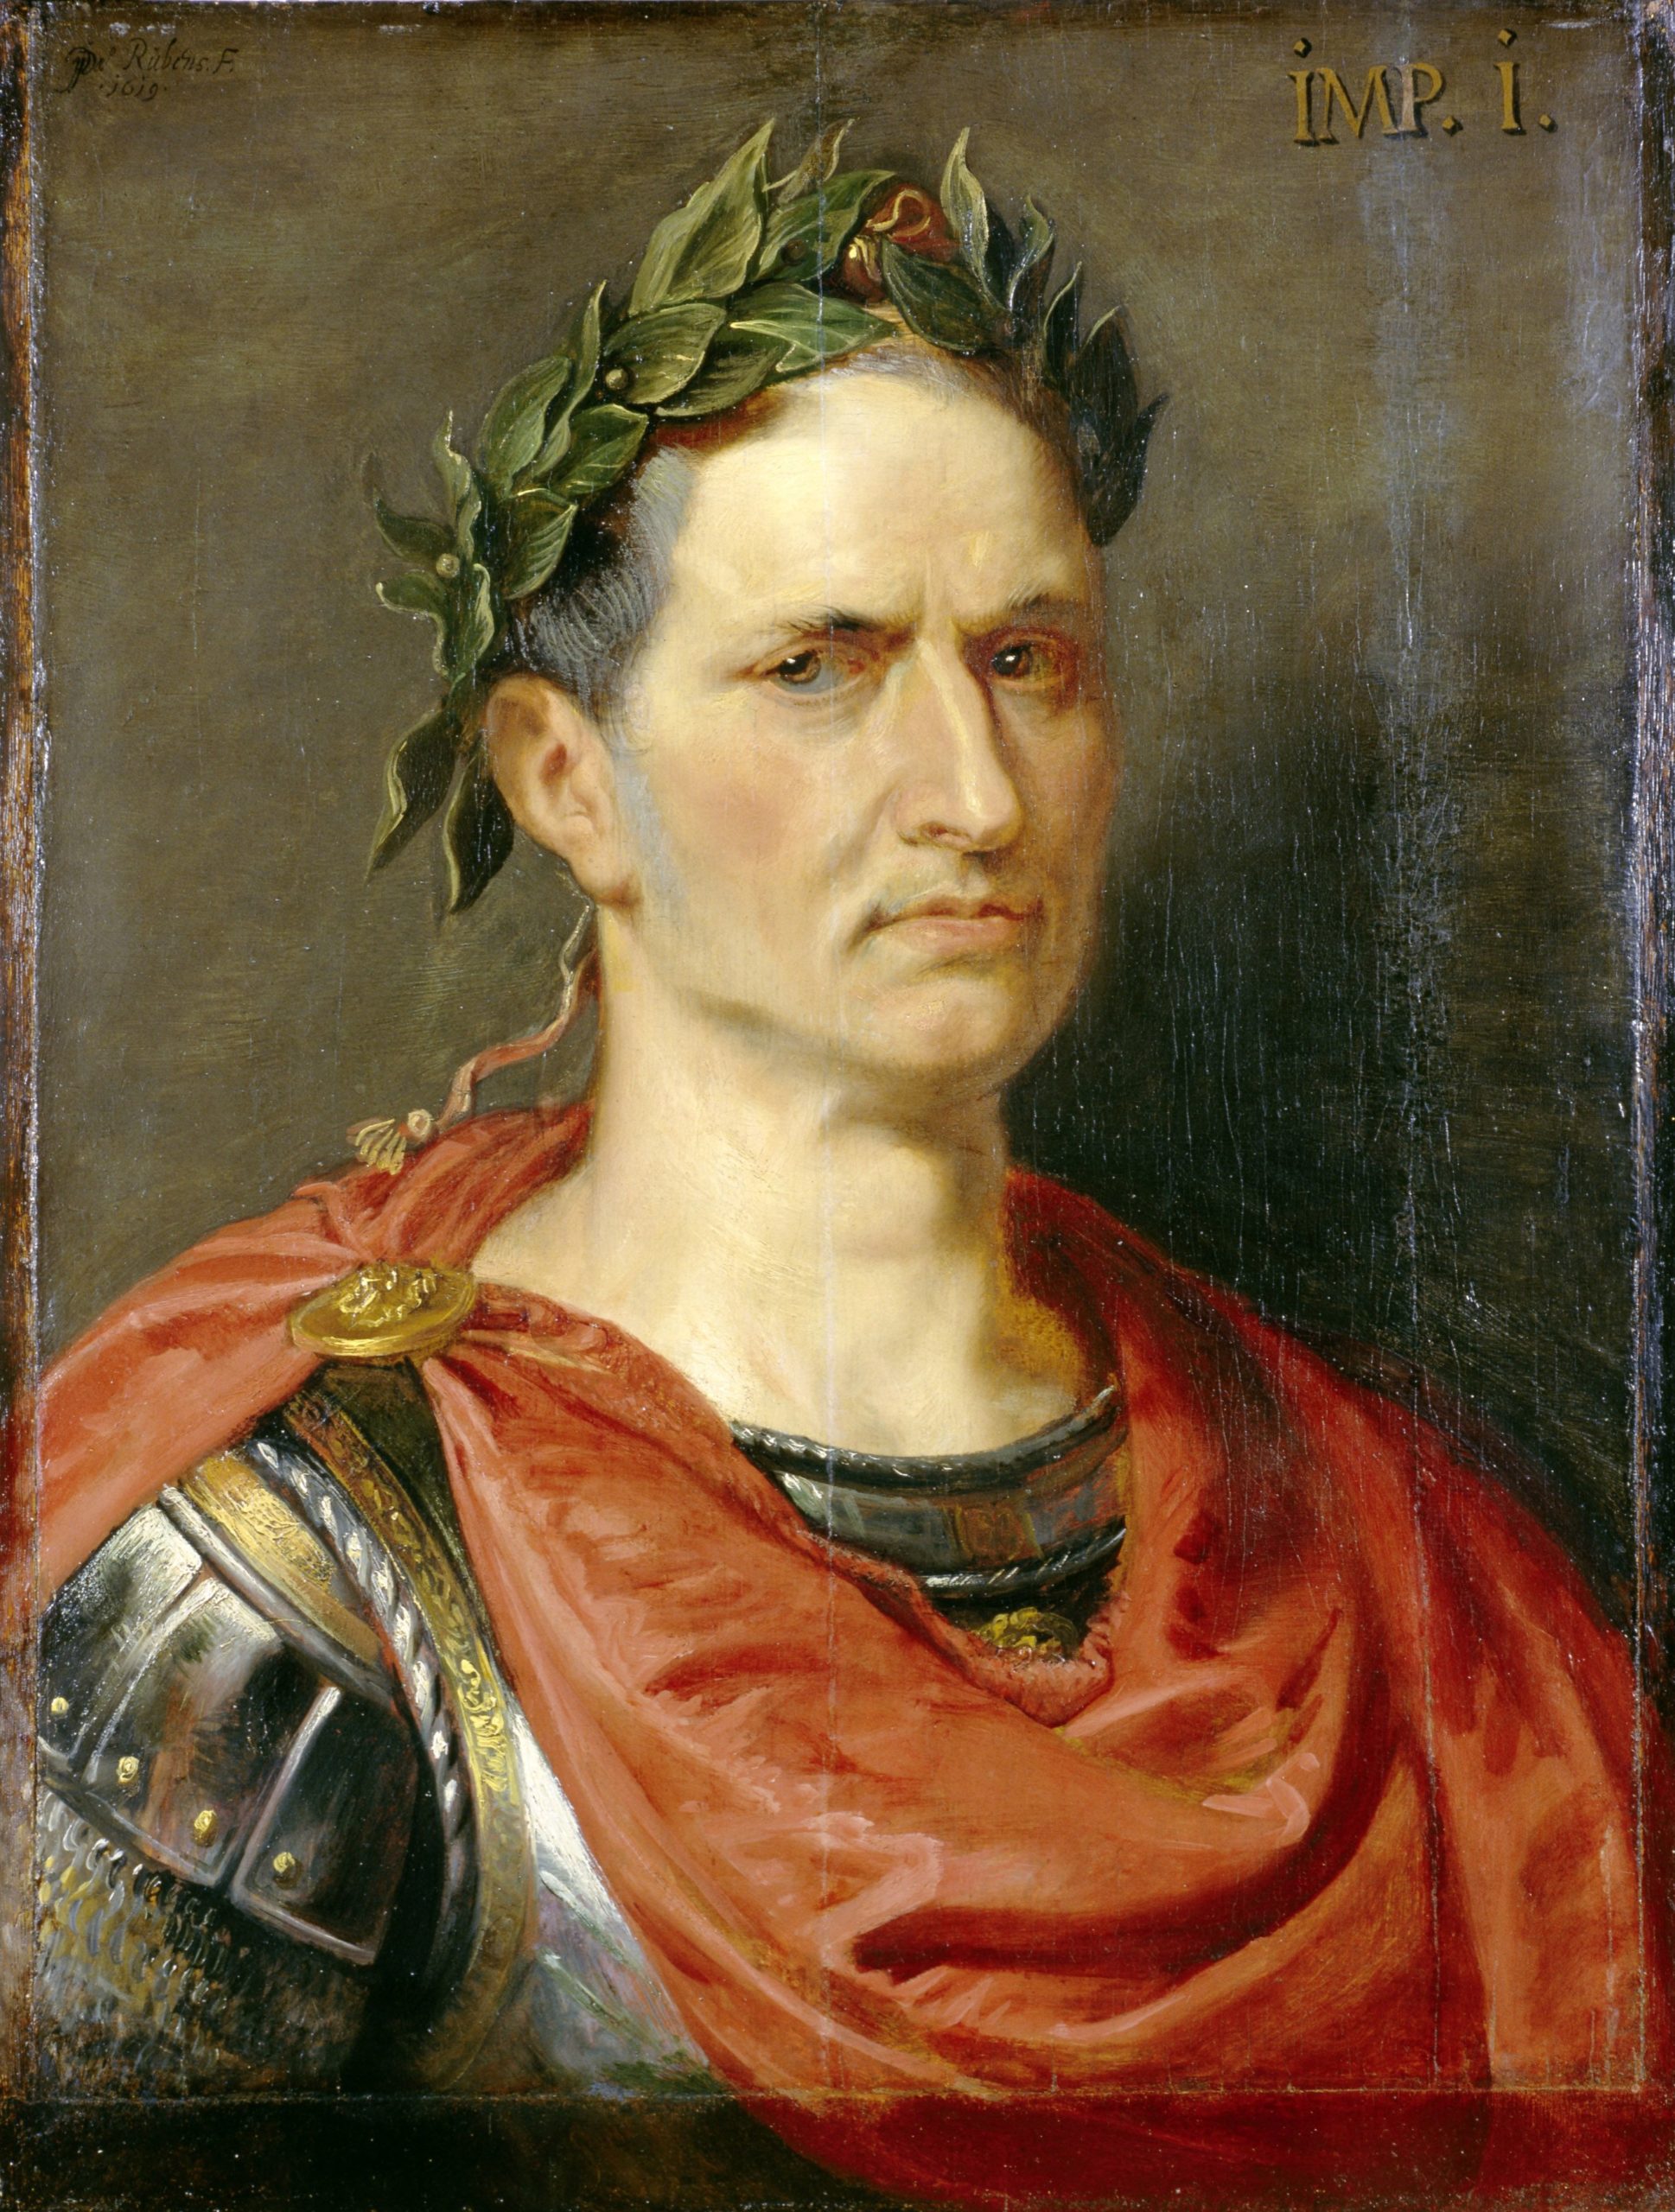 Les 15 personnes les plus influentes de l'histoire - Jules César